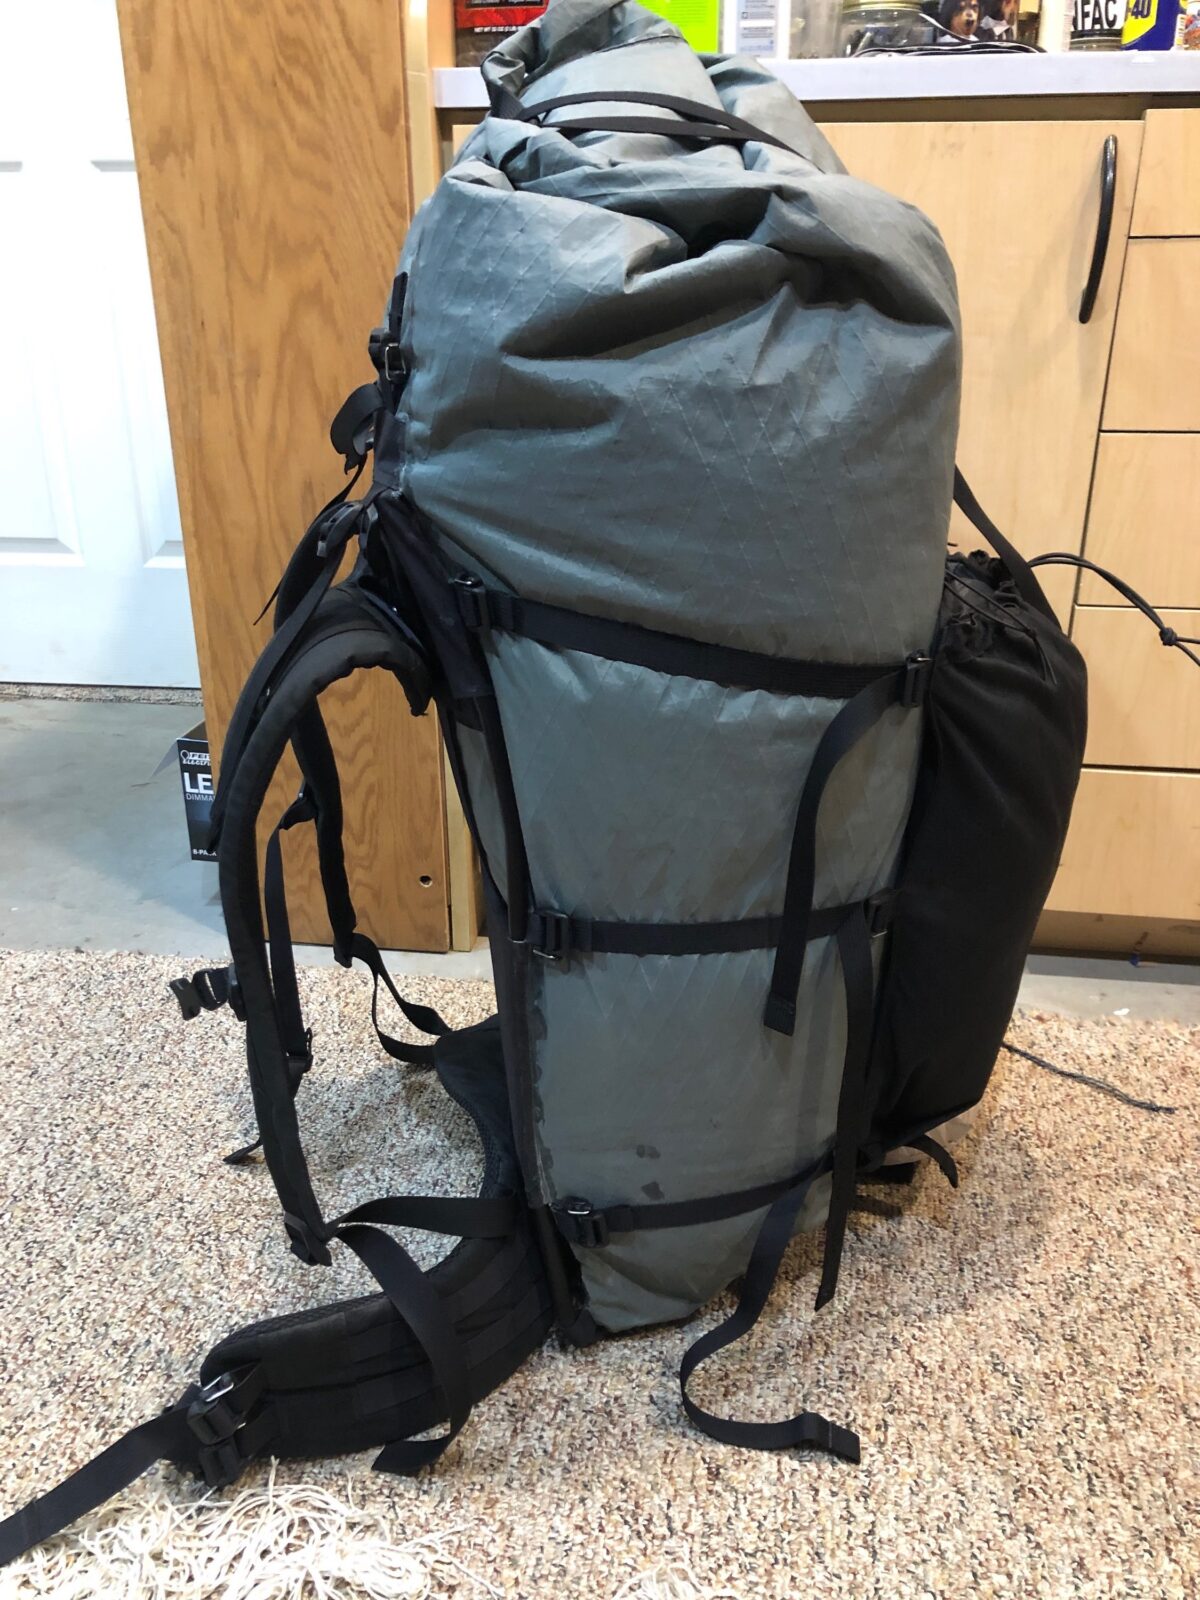 MYOG/Seek Outside 90L Backpack, size L harness, 3lbs 3 oz - Backpacking ...